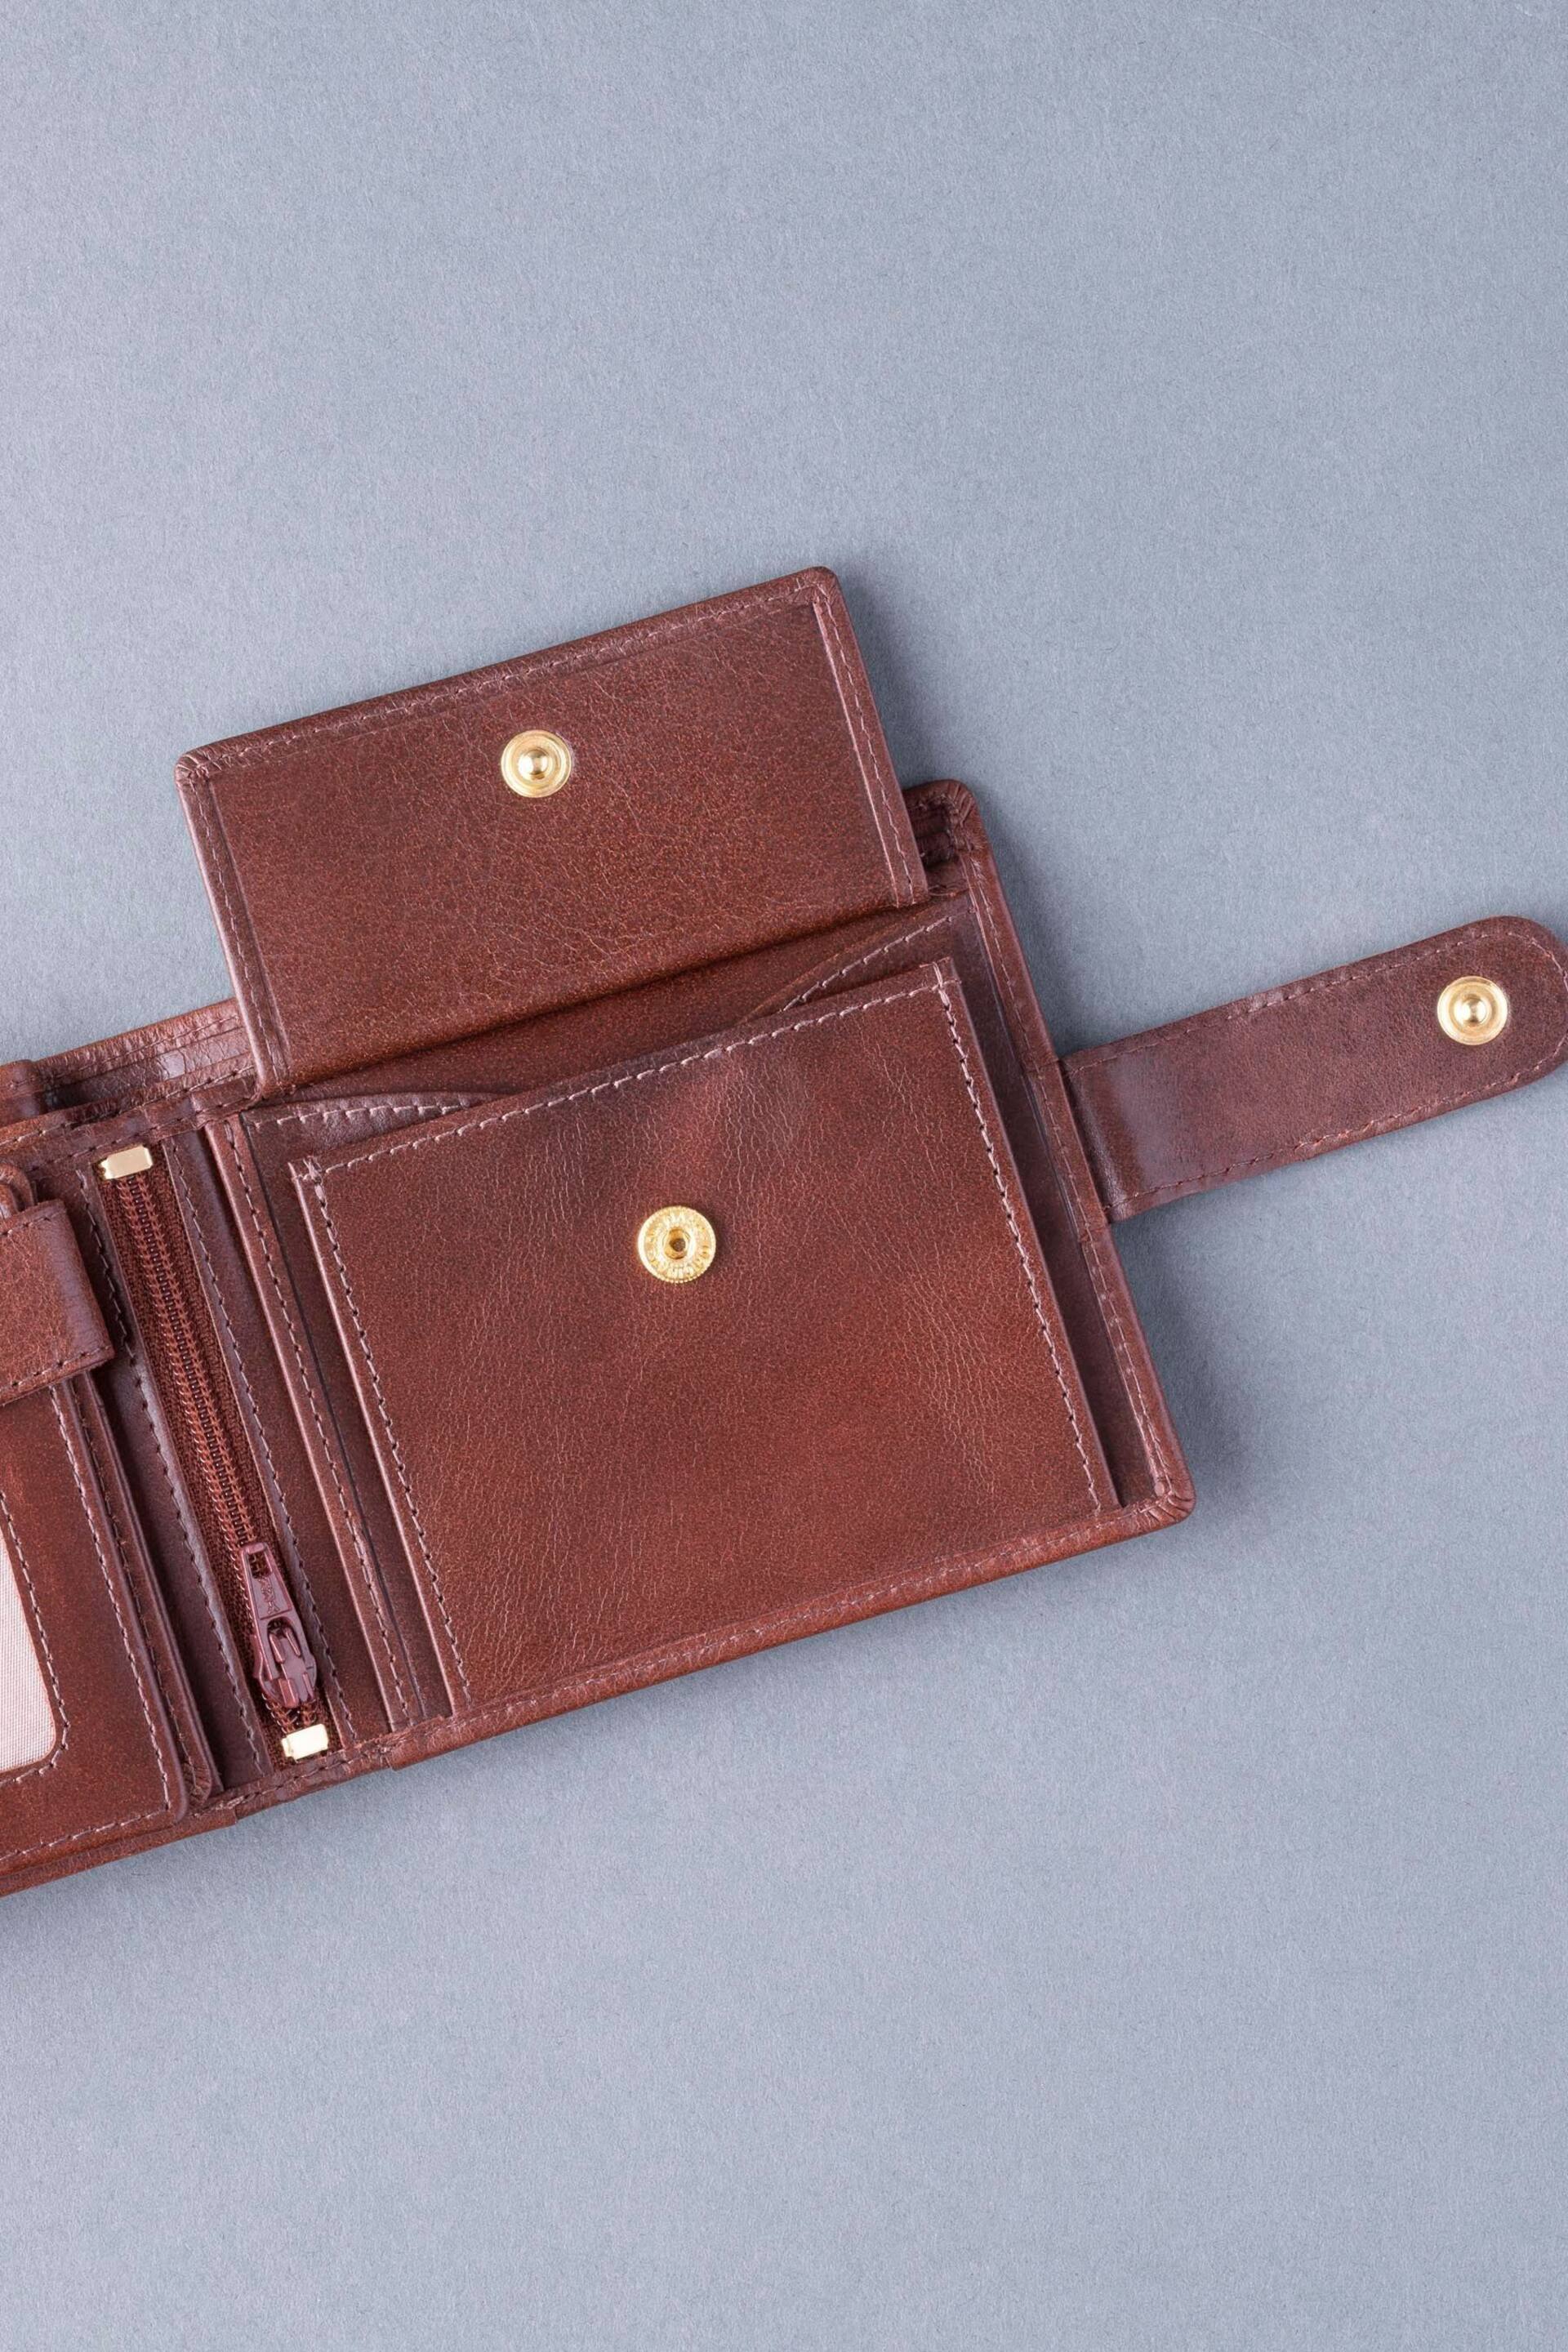 Lakeland Leather Ascari Leather Tri-Fold Wallet - Image 7 of 8